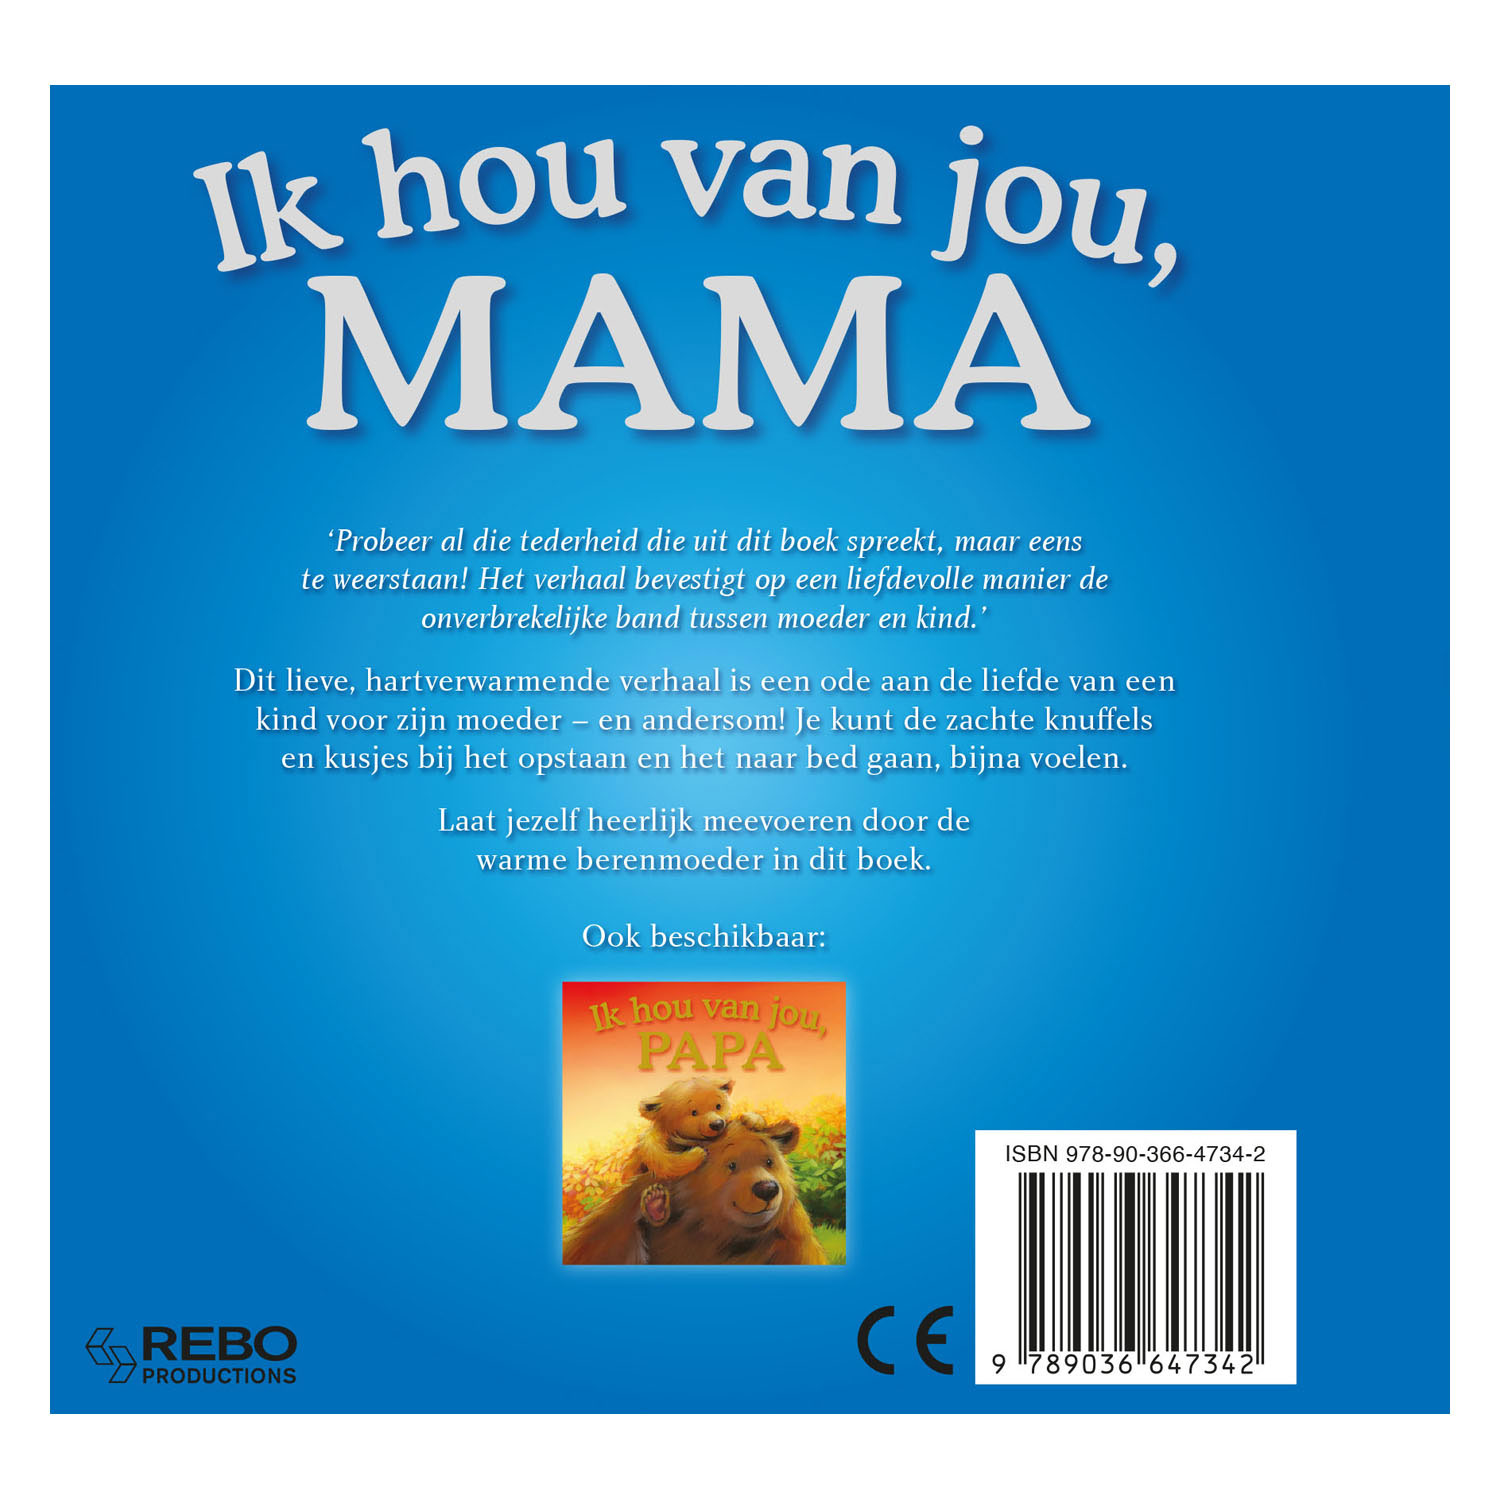 Ik Hou Van Jou, Mama - Kartonboek